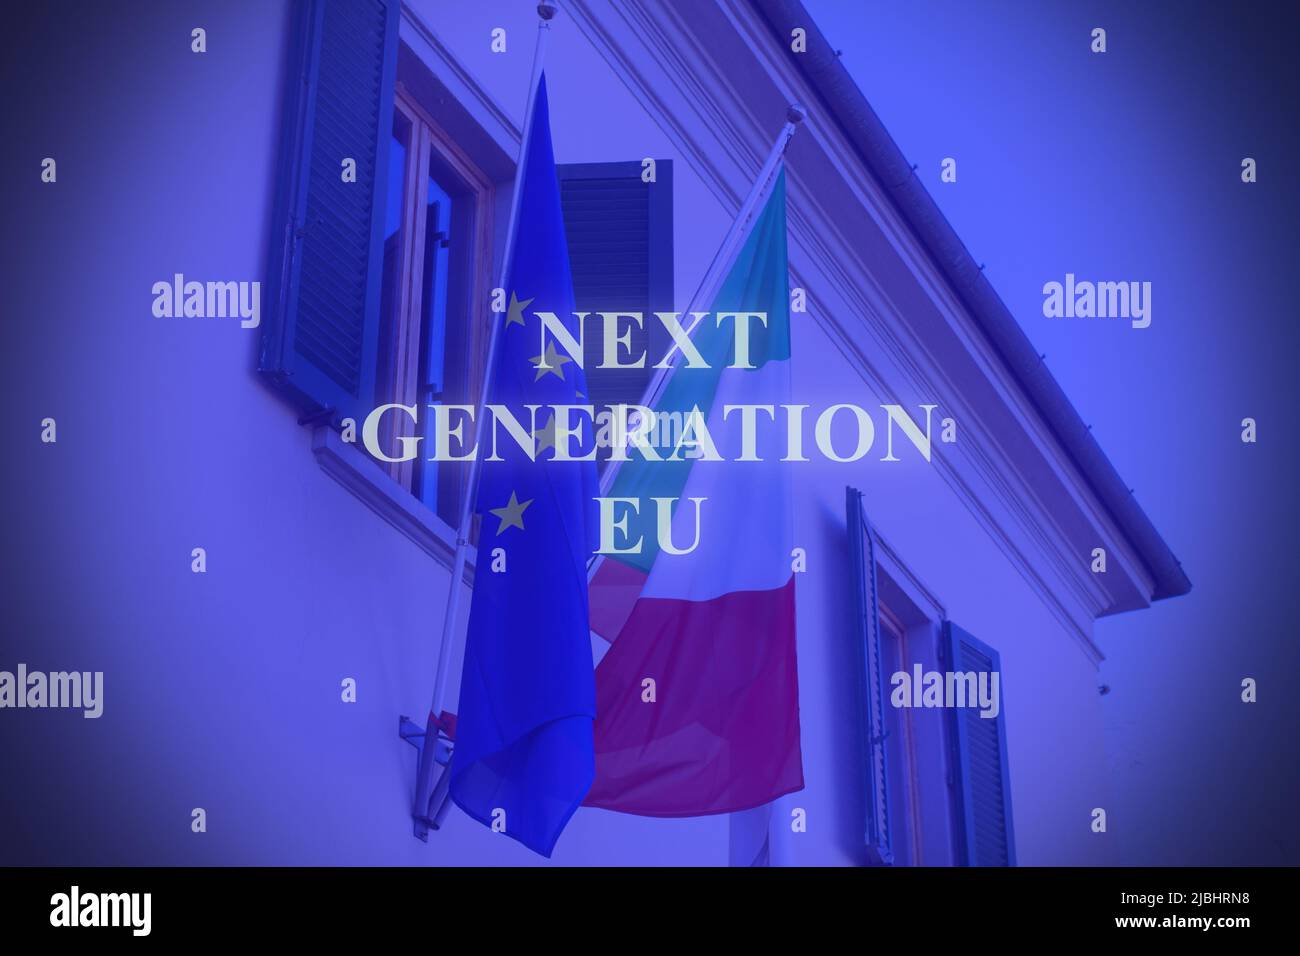 Prise de vue des drapeaux italiens et européens en Italie avec le texte « Next Generation eu » Banque D'Images